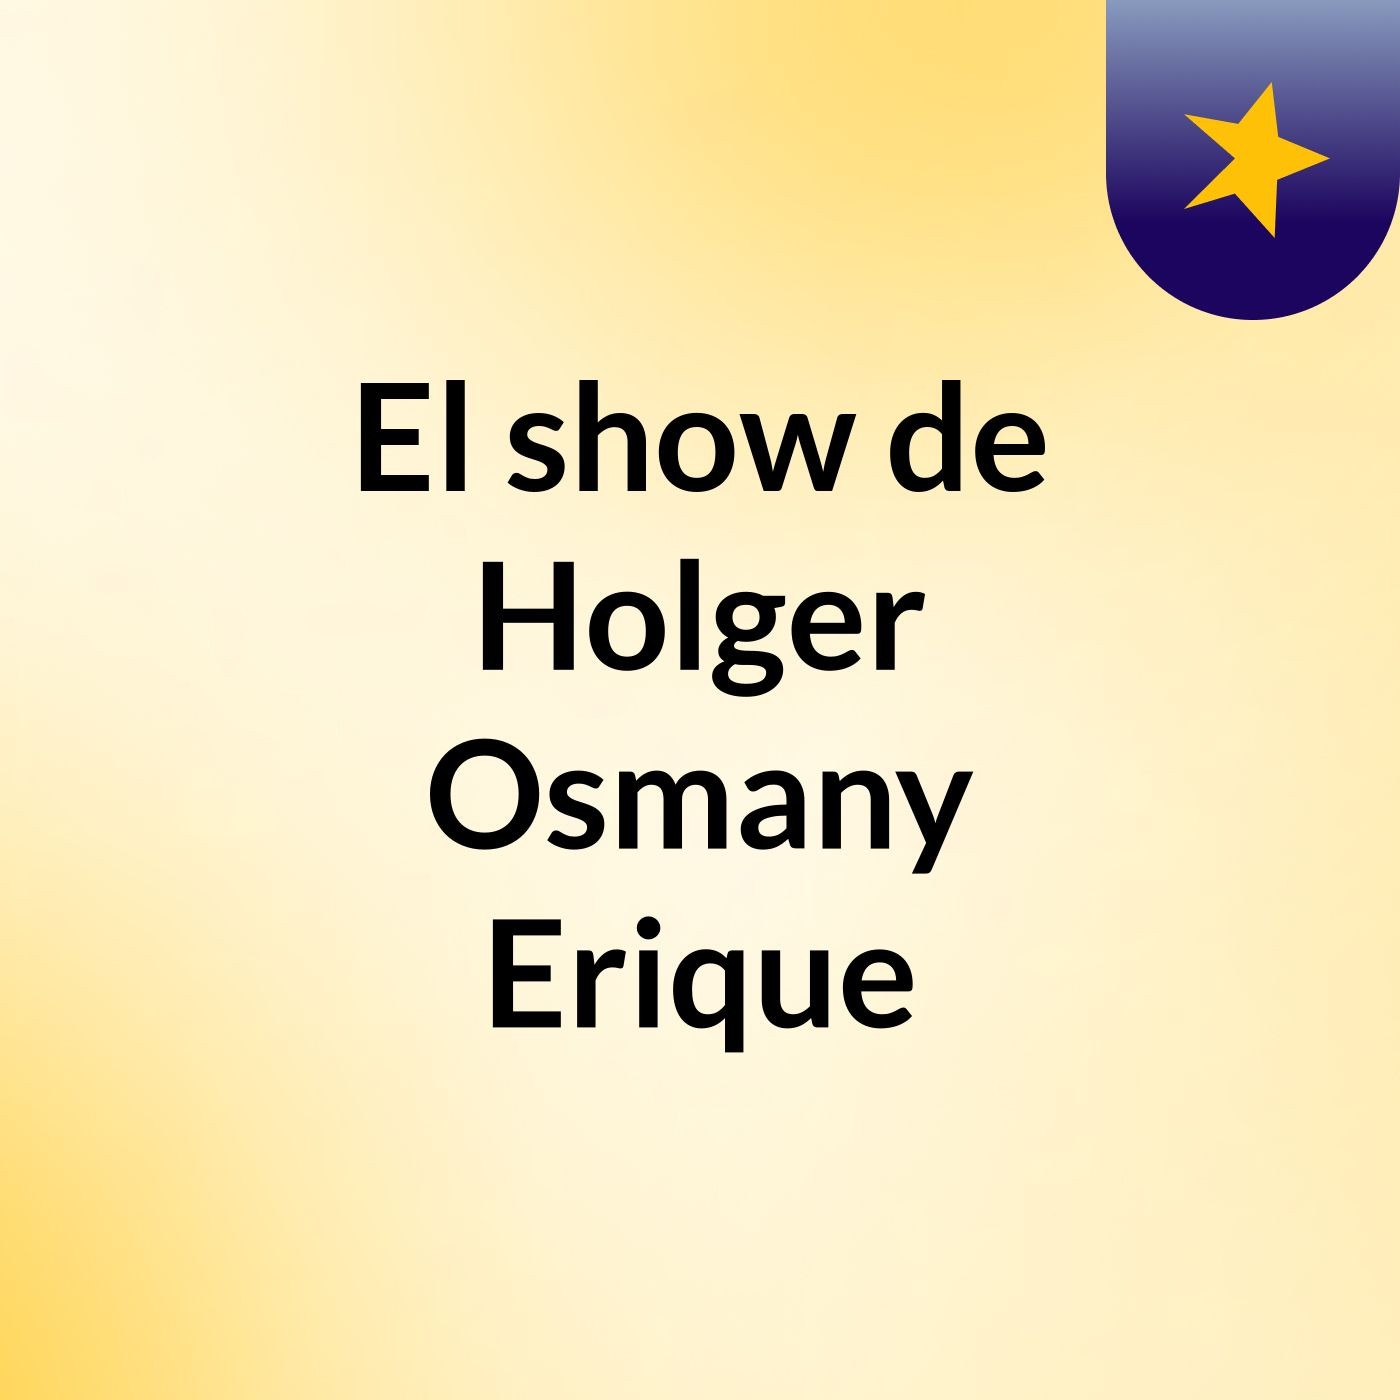 El show de Holger Osmany Erique